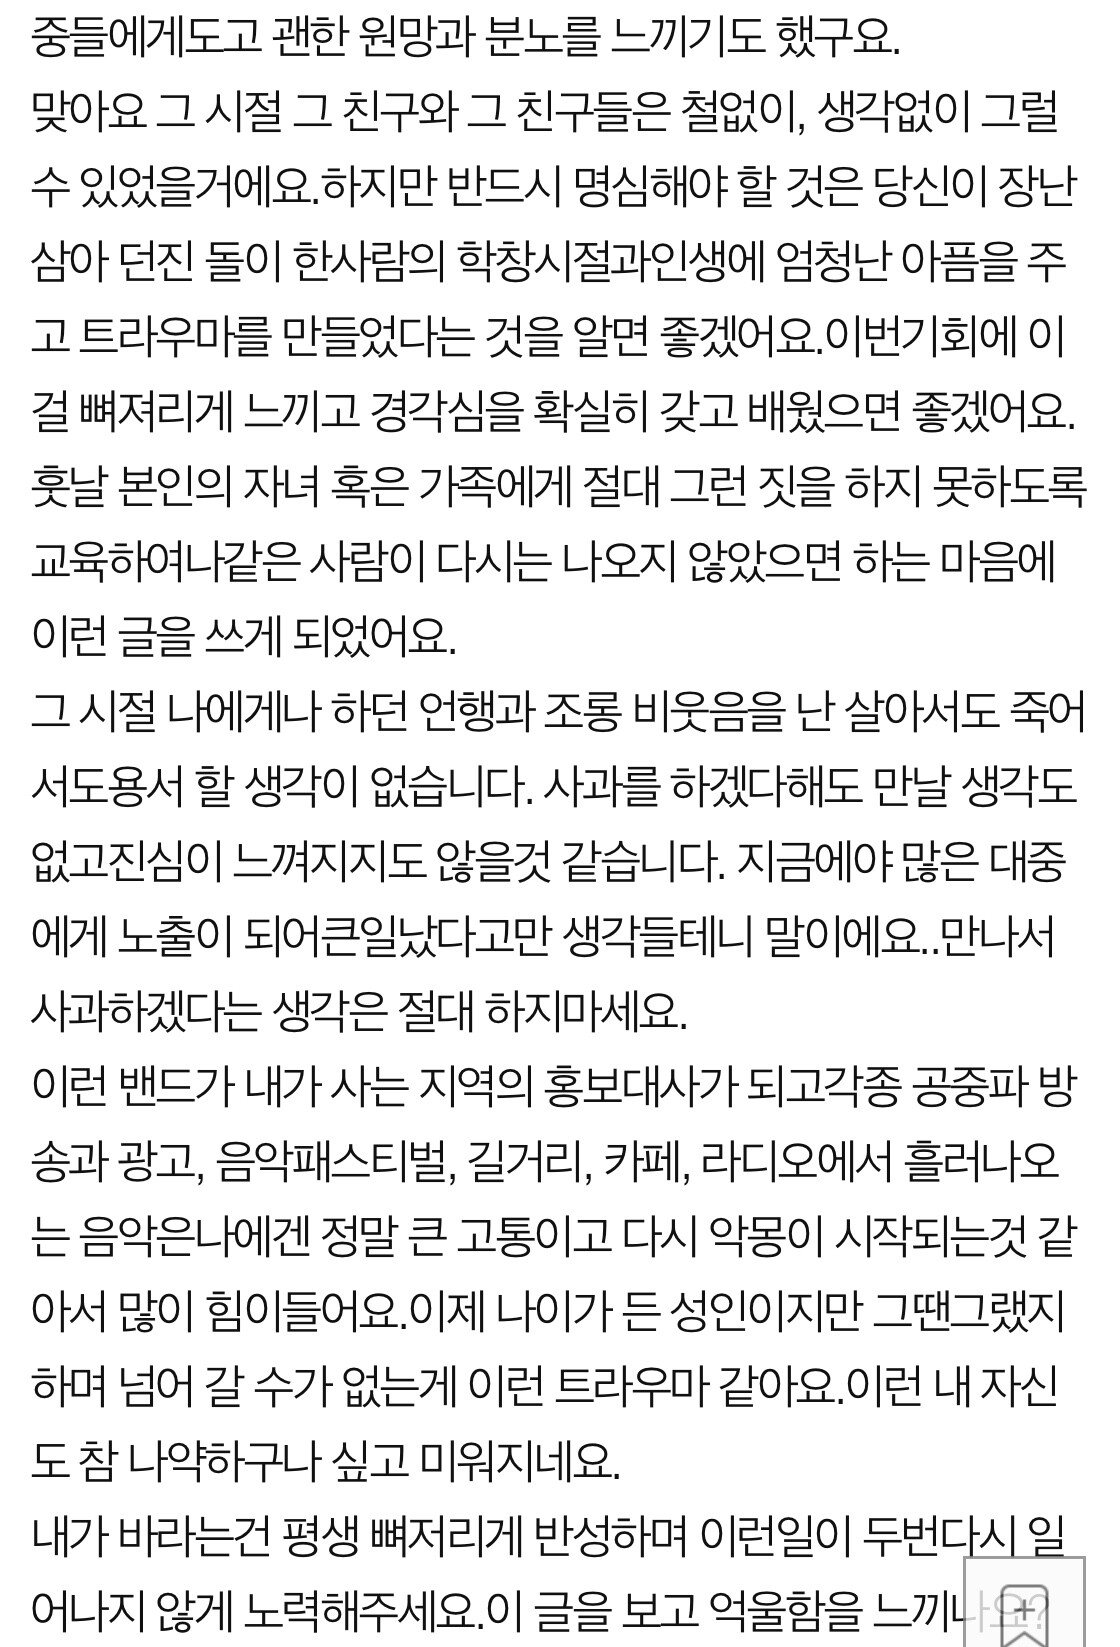 지금 터진'잔나비' 학교 폭.력. 폭로 ㄷㄷ